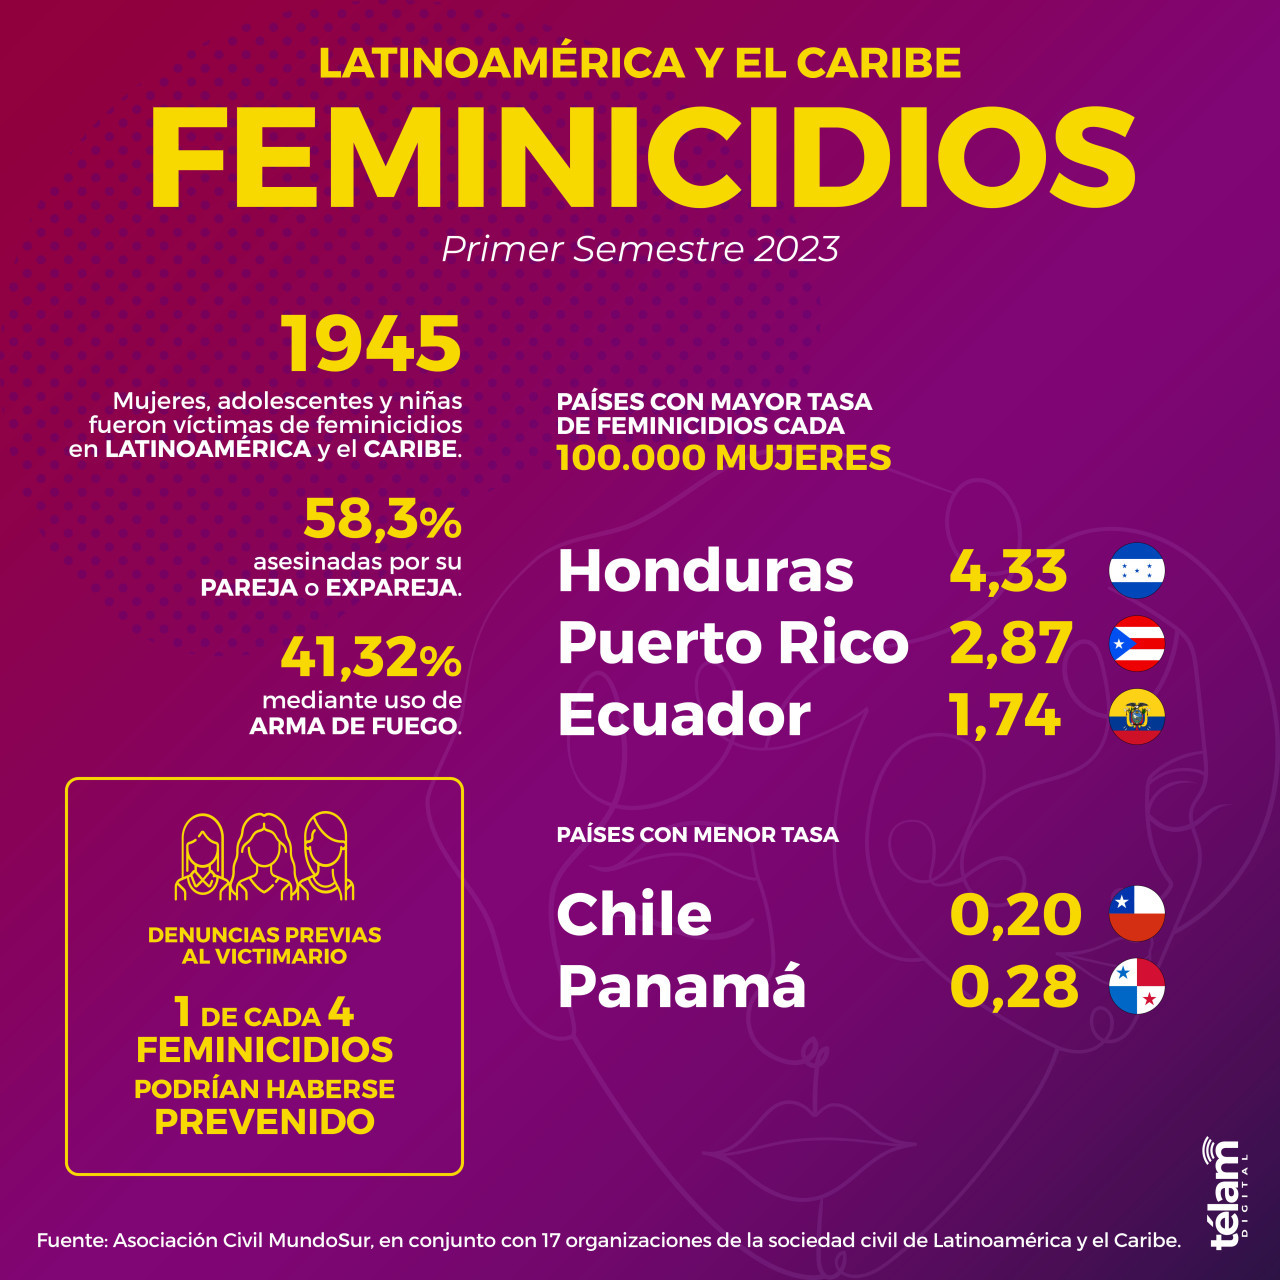 Femicidios en Latinoamérica y El Caribe